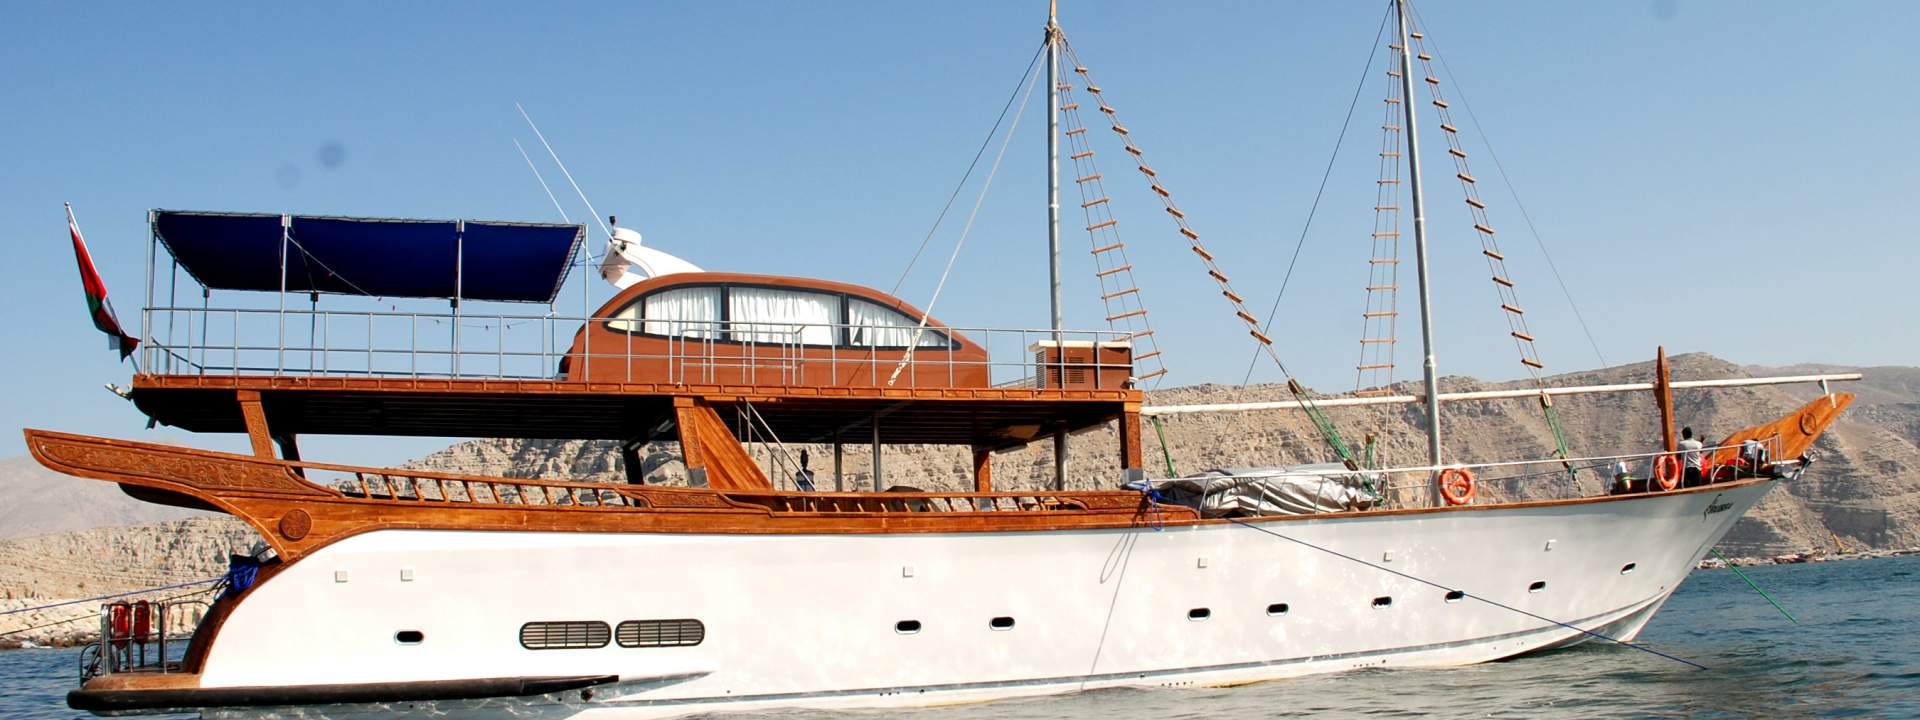 Luxury Yacht Rubba